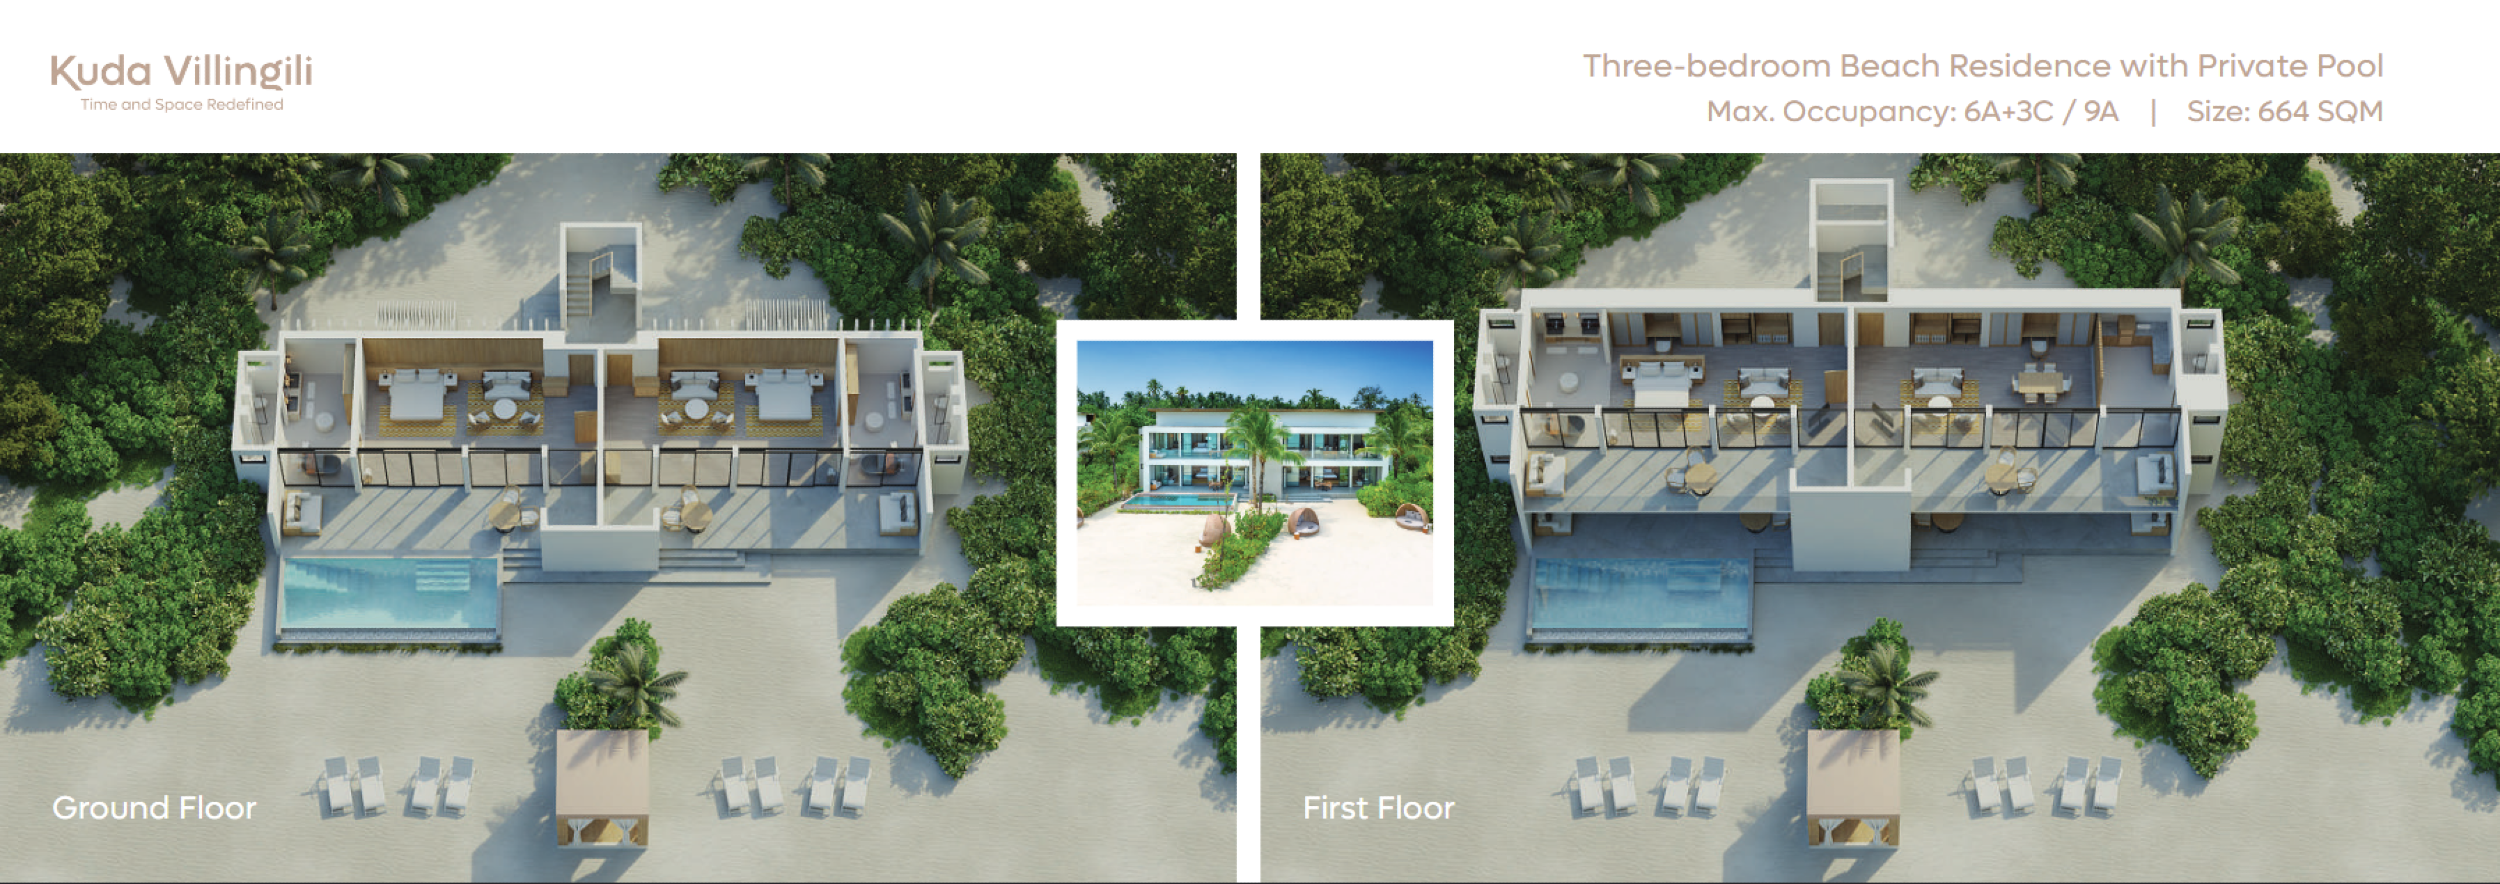 Three-bedroom Beach Residence with Private Pool - floor map - Kuda Villingili Resort Maldives